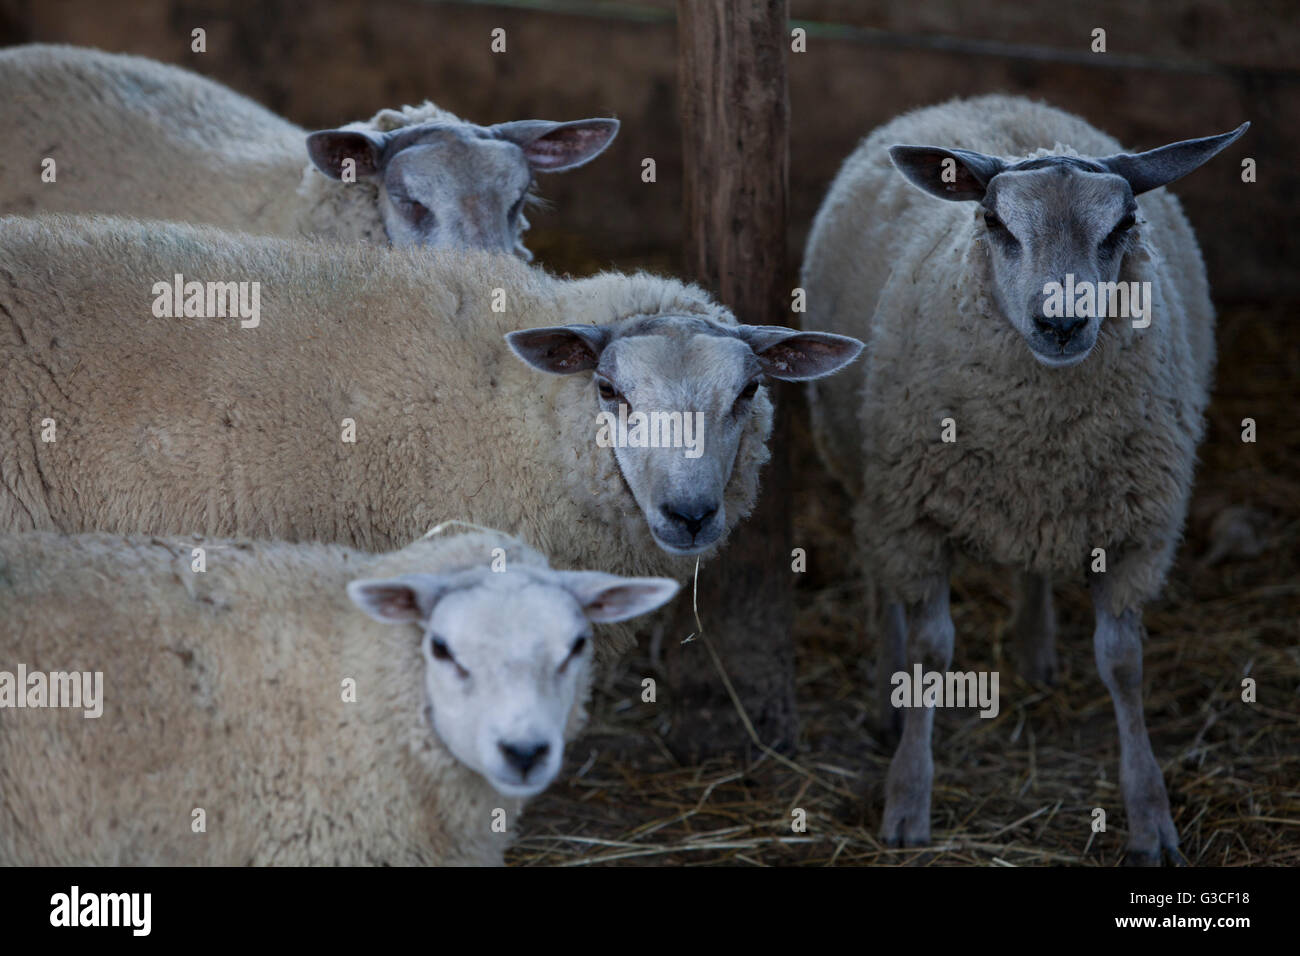 Granja ovejera,tonco,monferrato Foto de stock